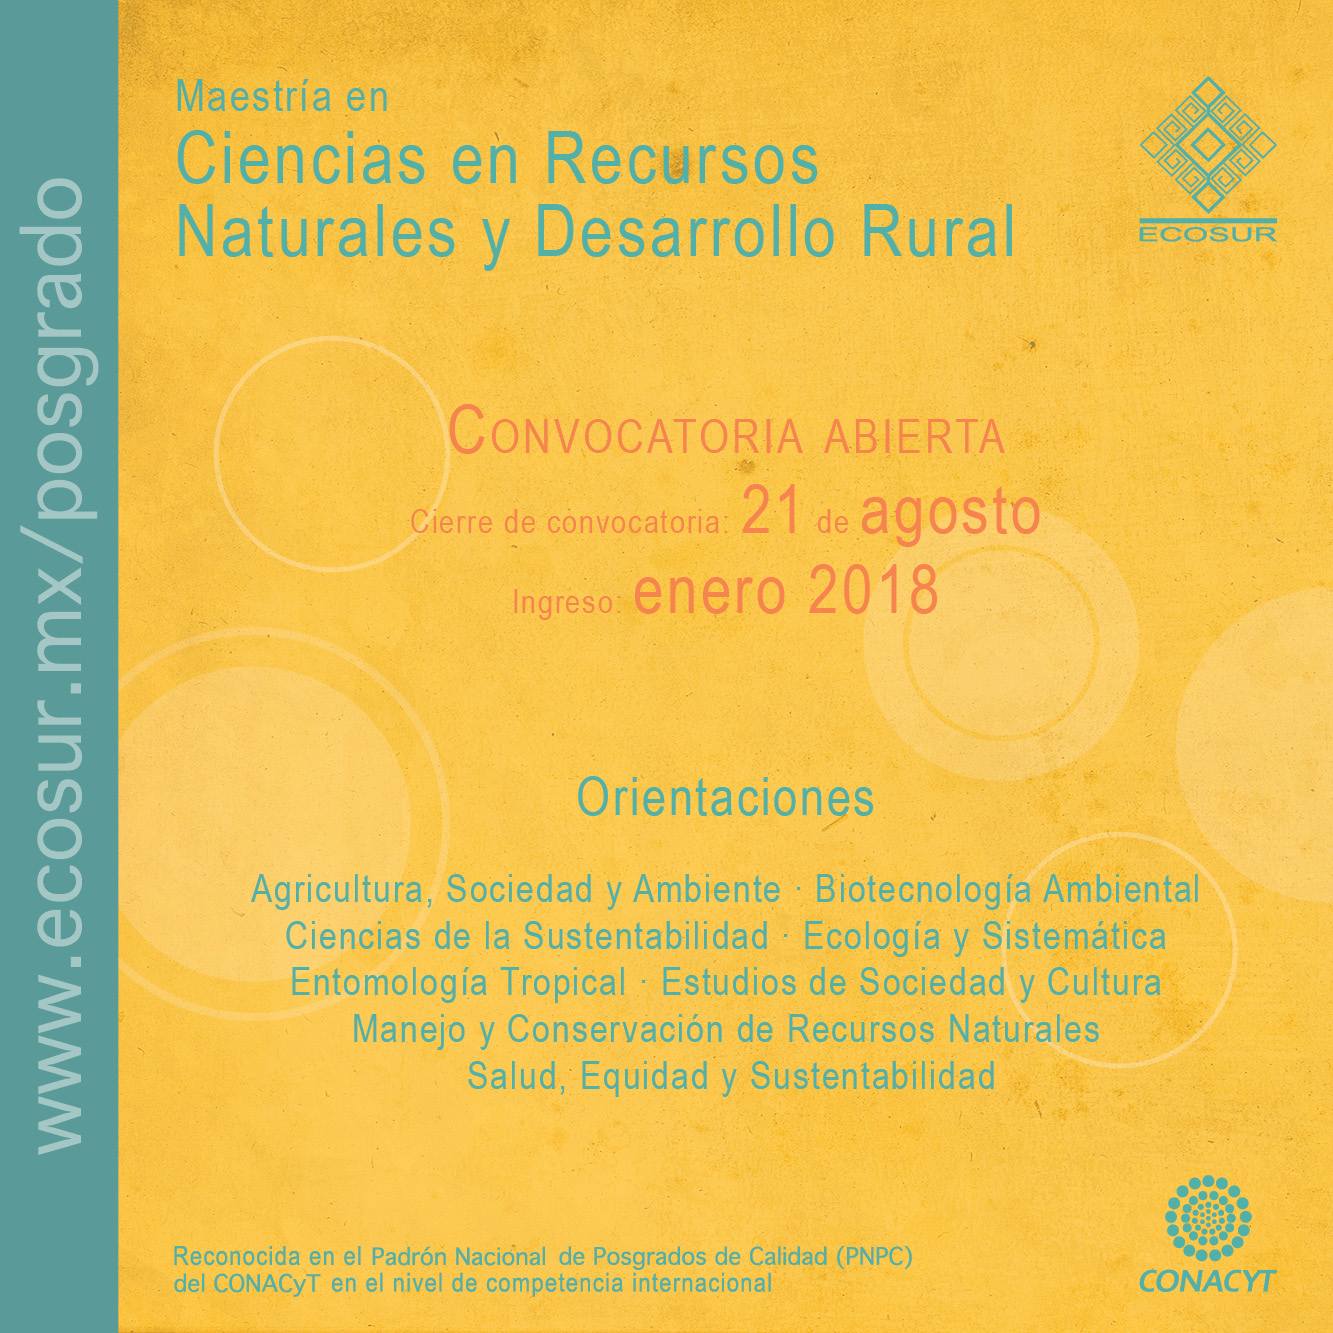 Convocatoria 2018 Maestría en Ciencias en Recursos Naturales y Desarrollo Rural